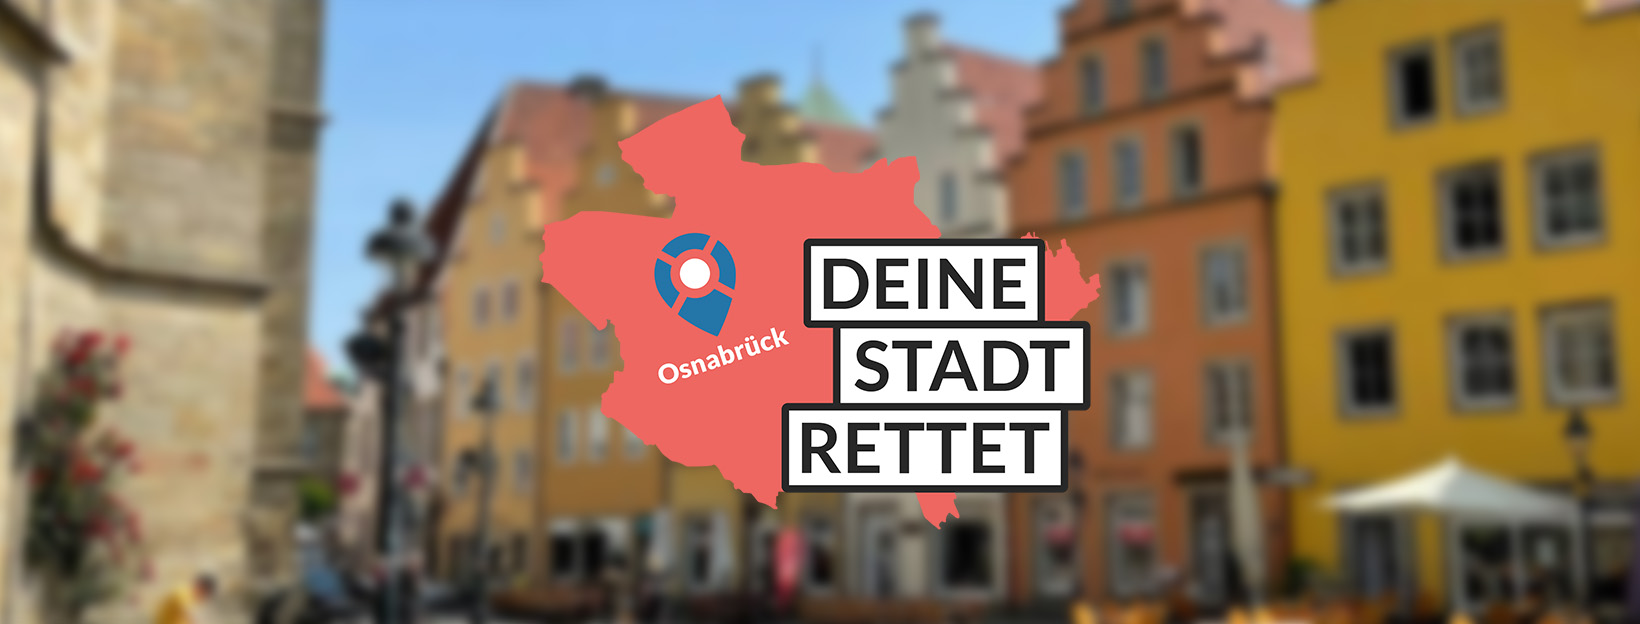 Osnabrück Rettet